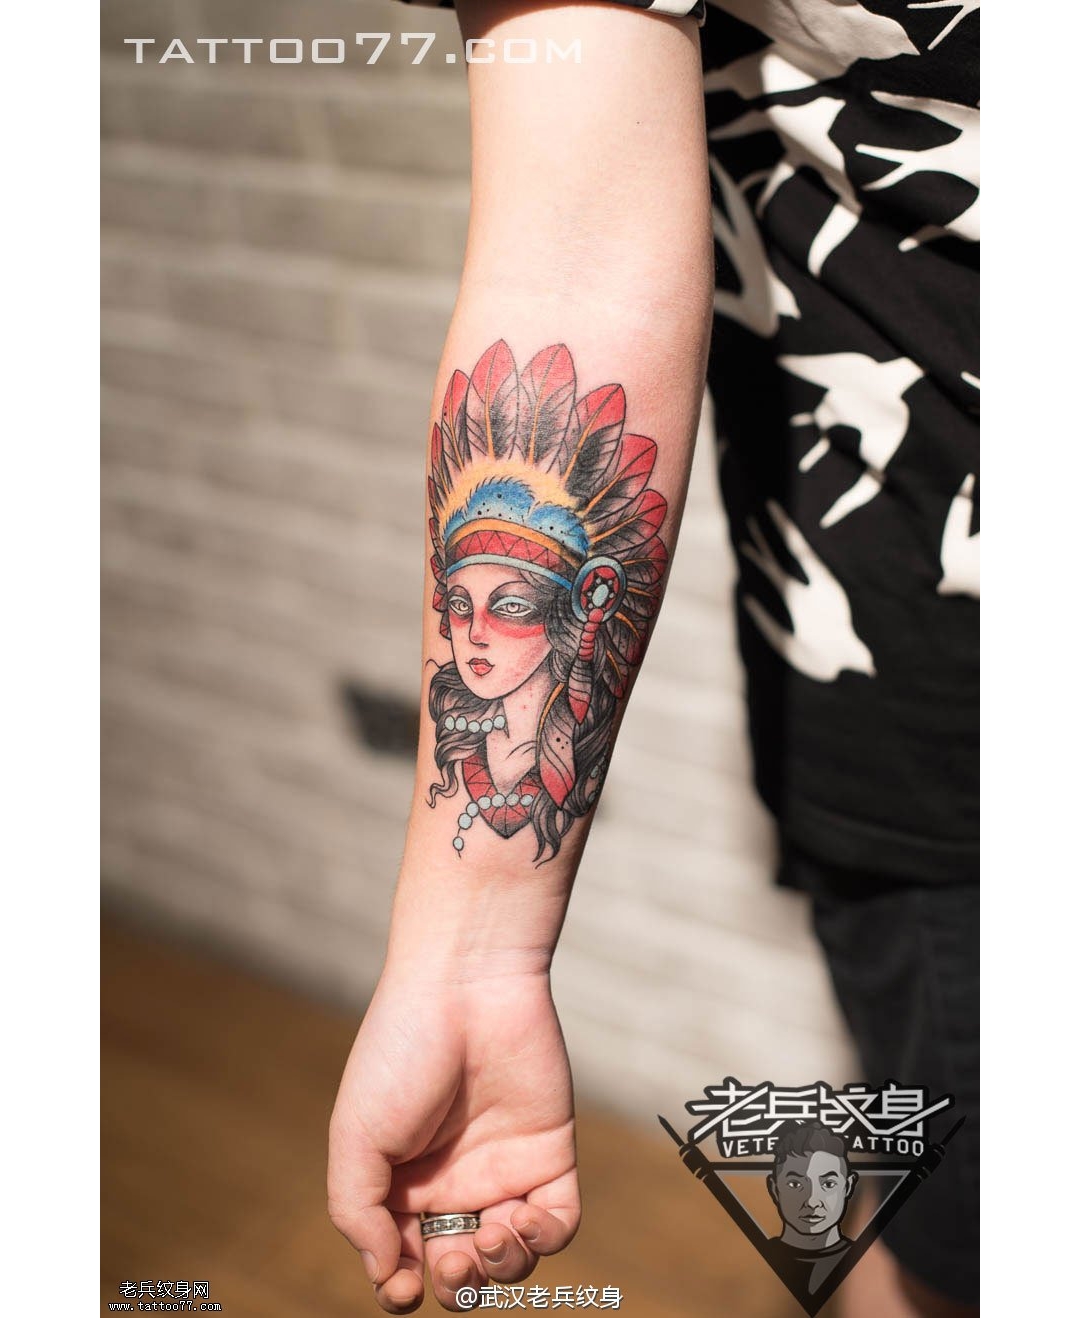 武汉专业女纹身制作的手臂印第安人纹身作品